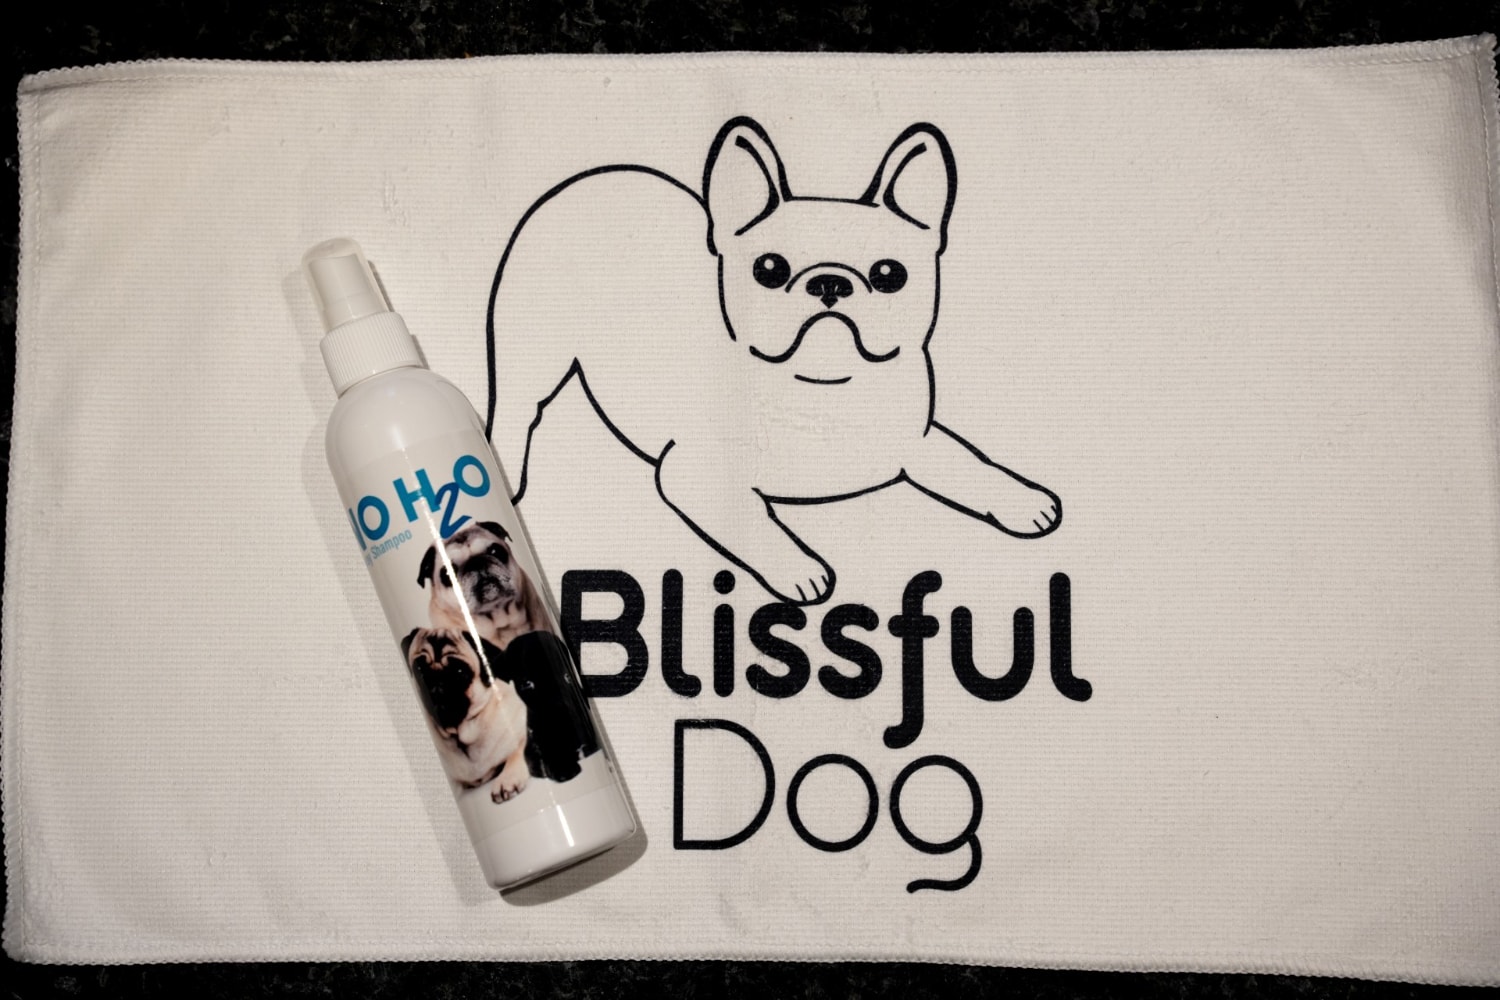 The Blissful Dog No H2O Spray Pet Shampoo - shampoo and bath towel